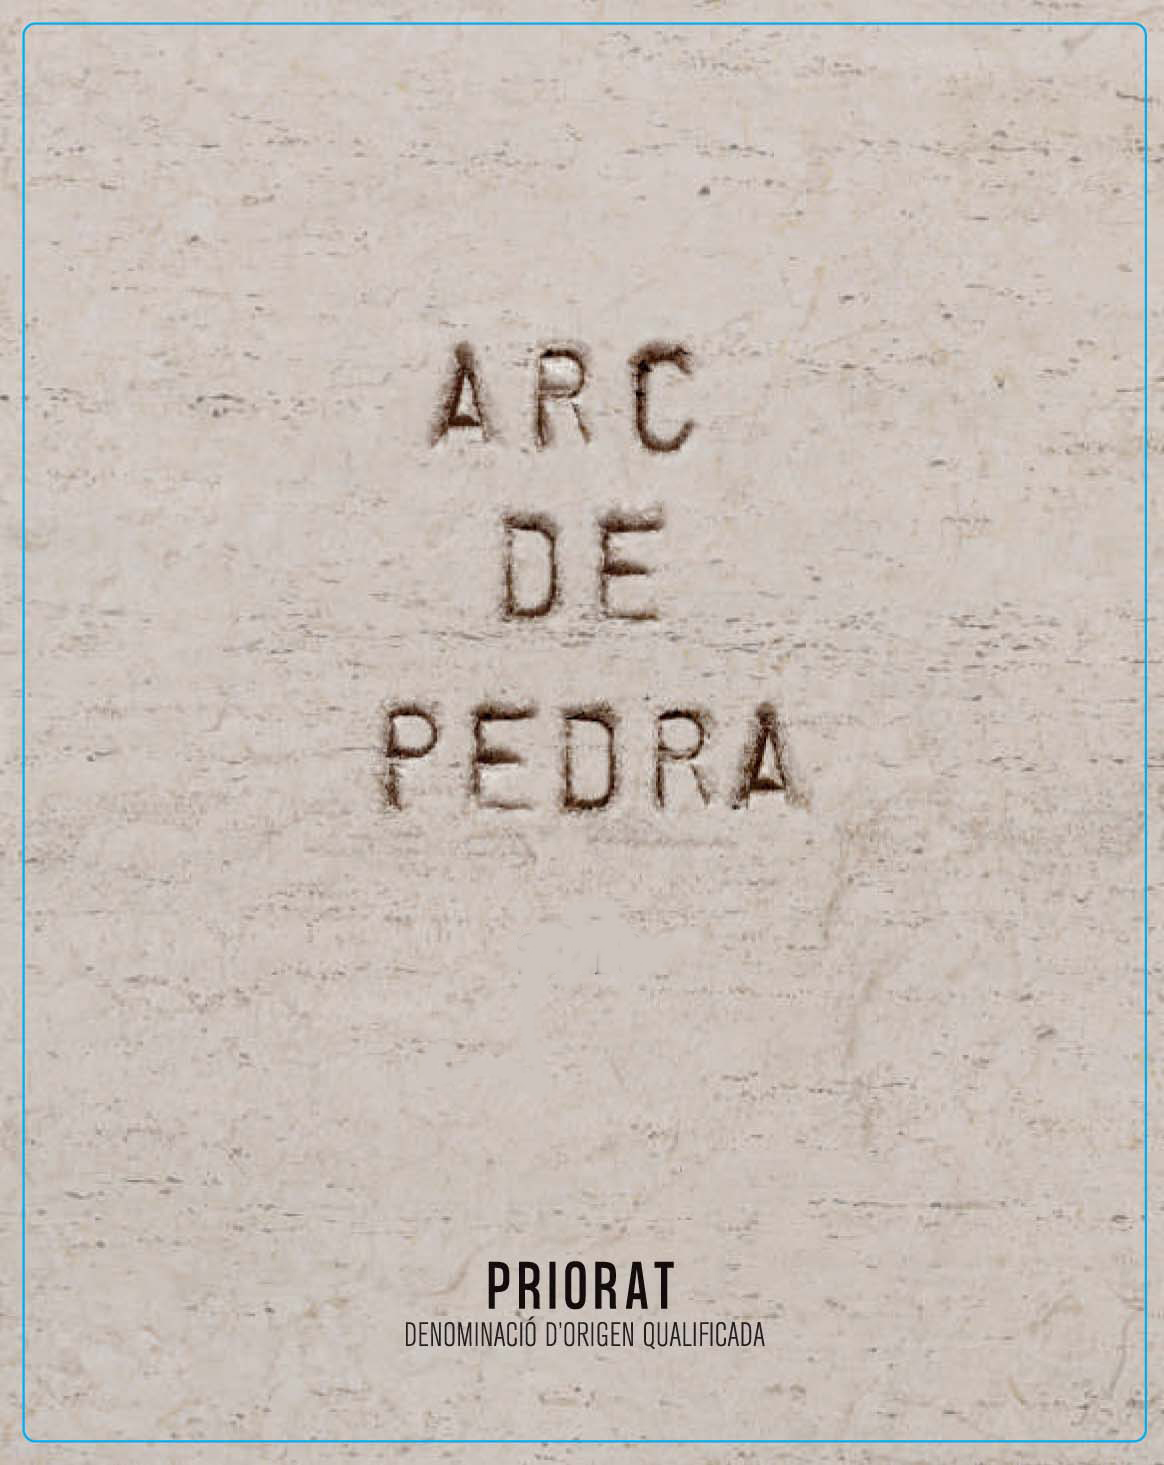 Arc de Pedra - Priorat label